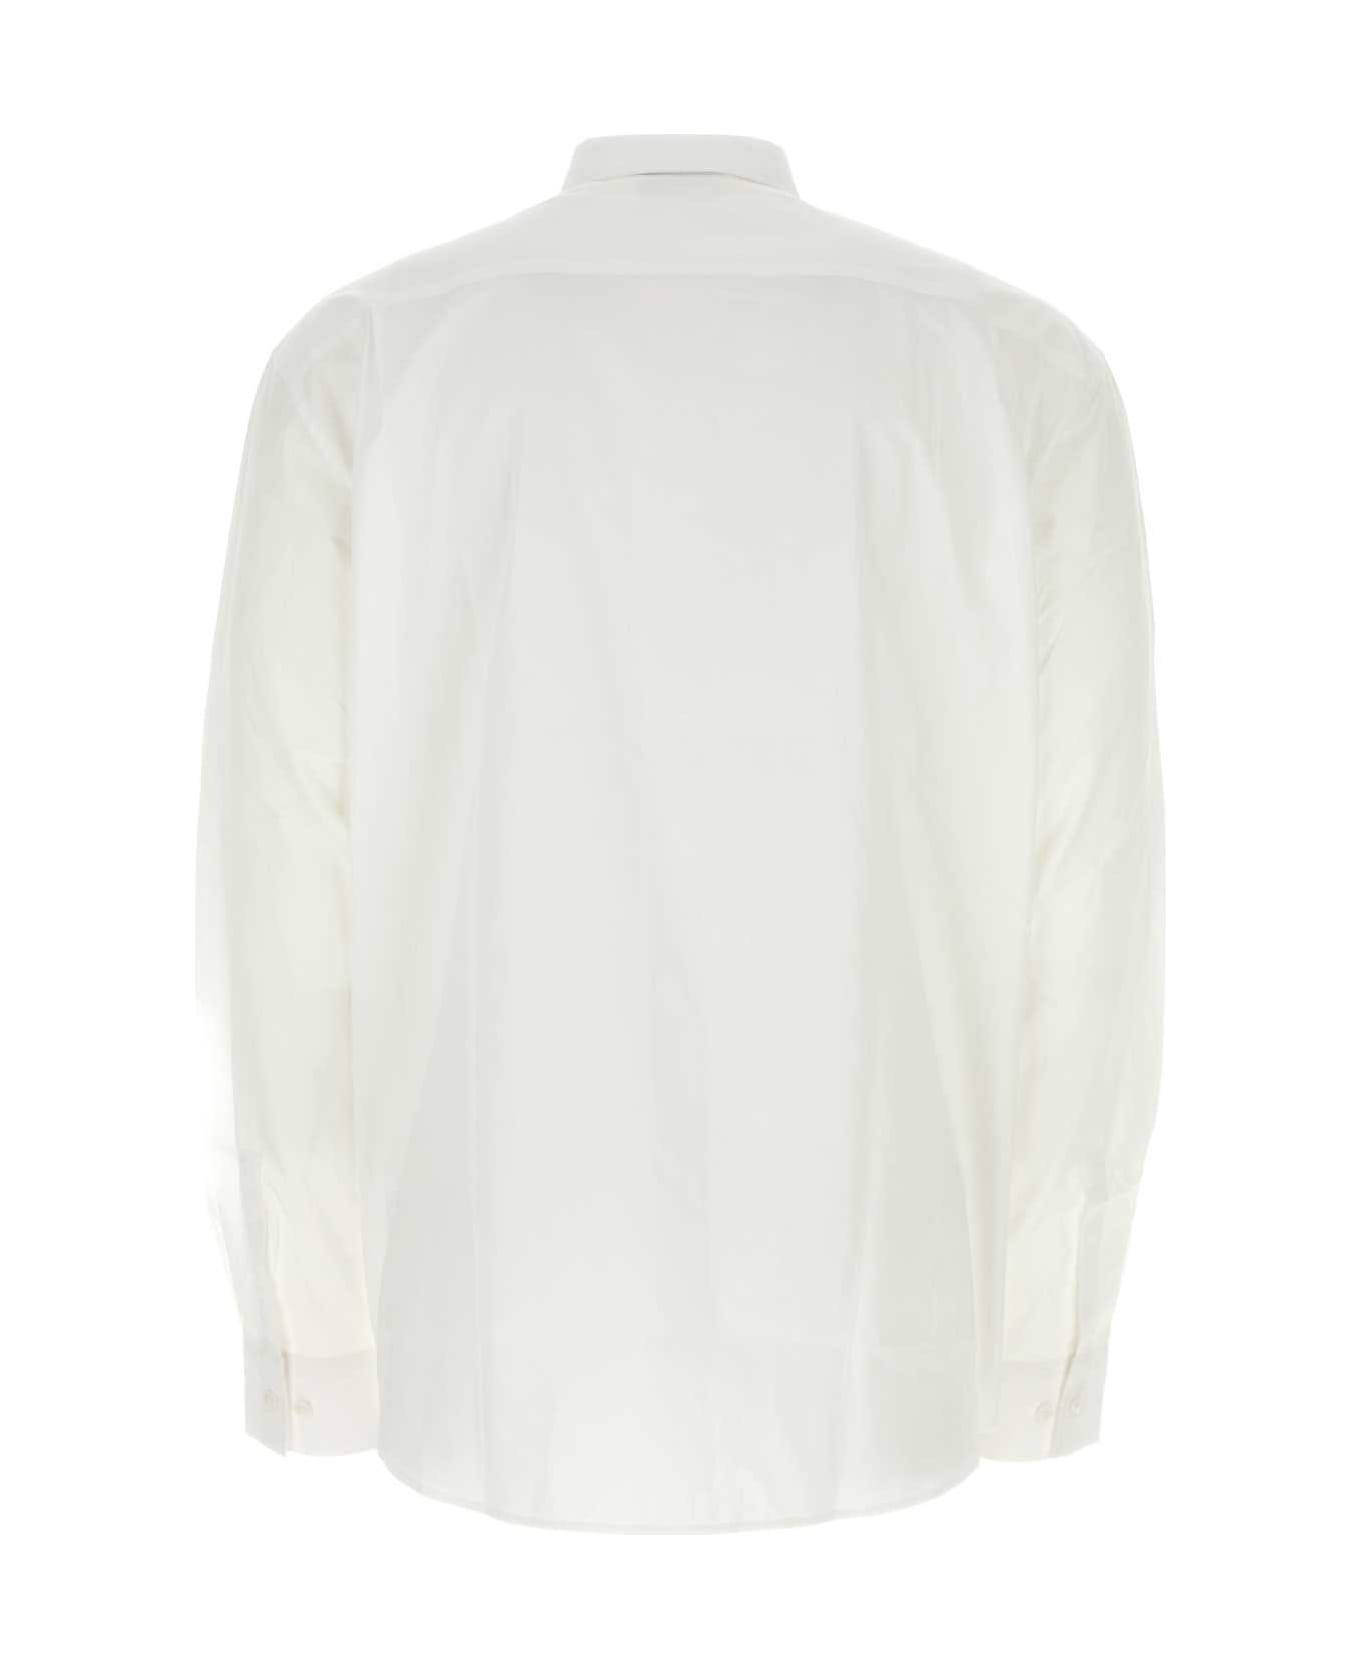 VTMNTS White Poplin Shirt - WHITE / RED